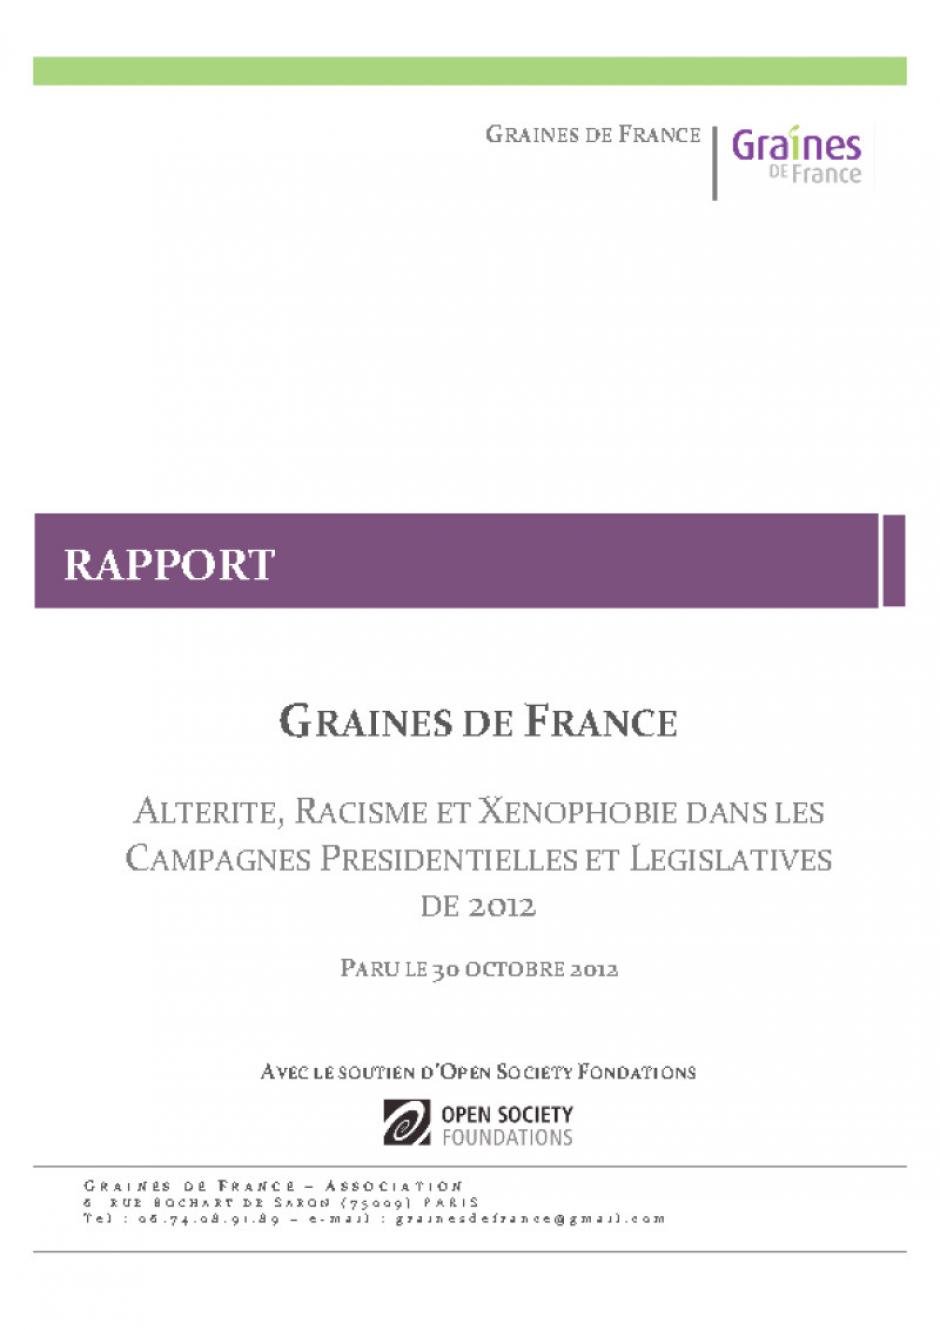 Graines de France-Rapport « Altérité, racisme et xénophobie lors des campagnes présidentielles et législatives de 2012 » - 30 octobre 2012